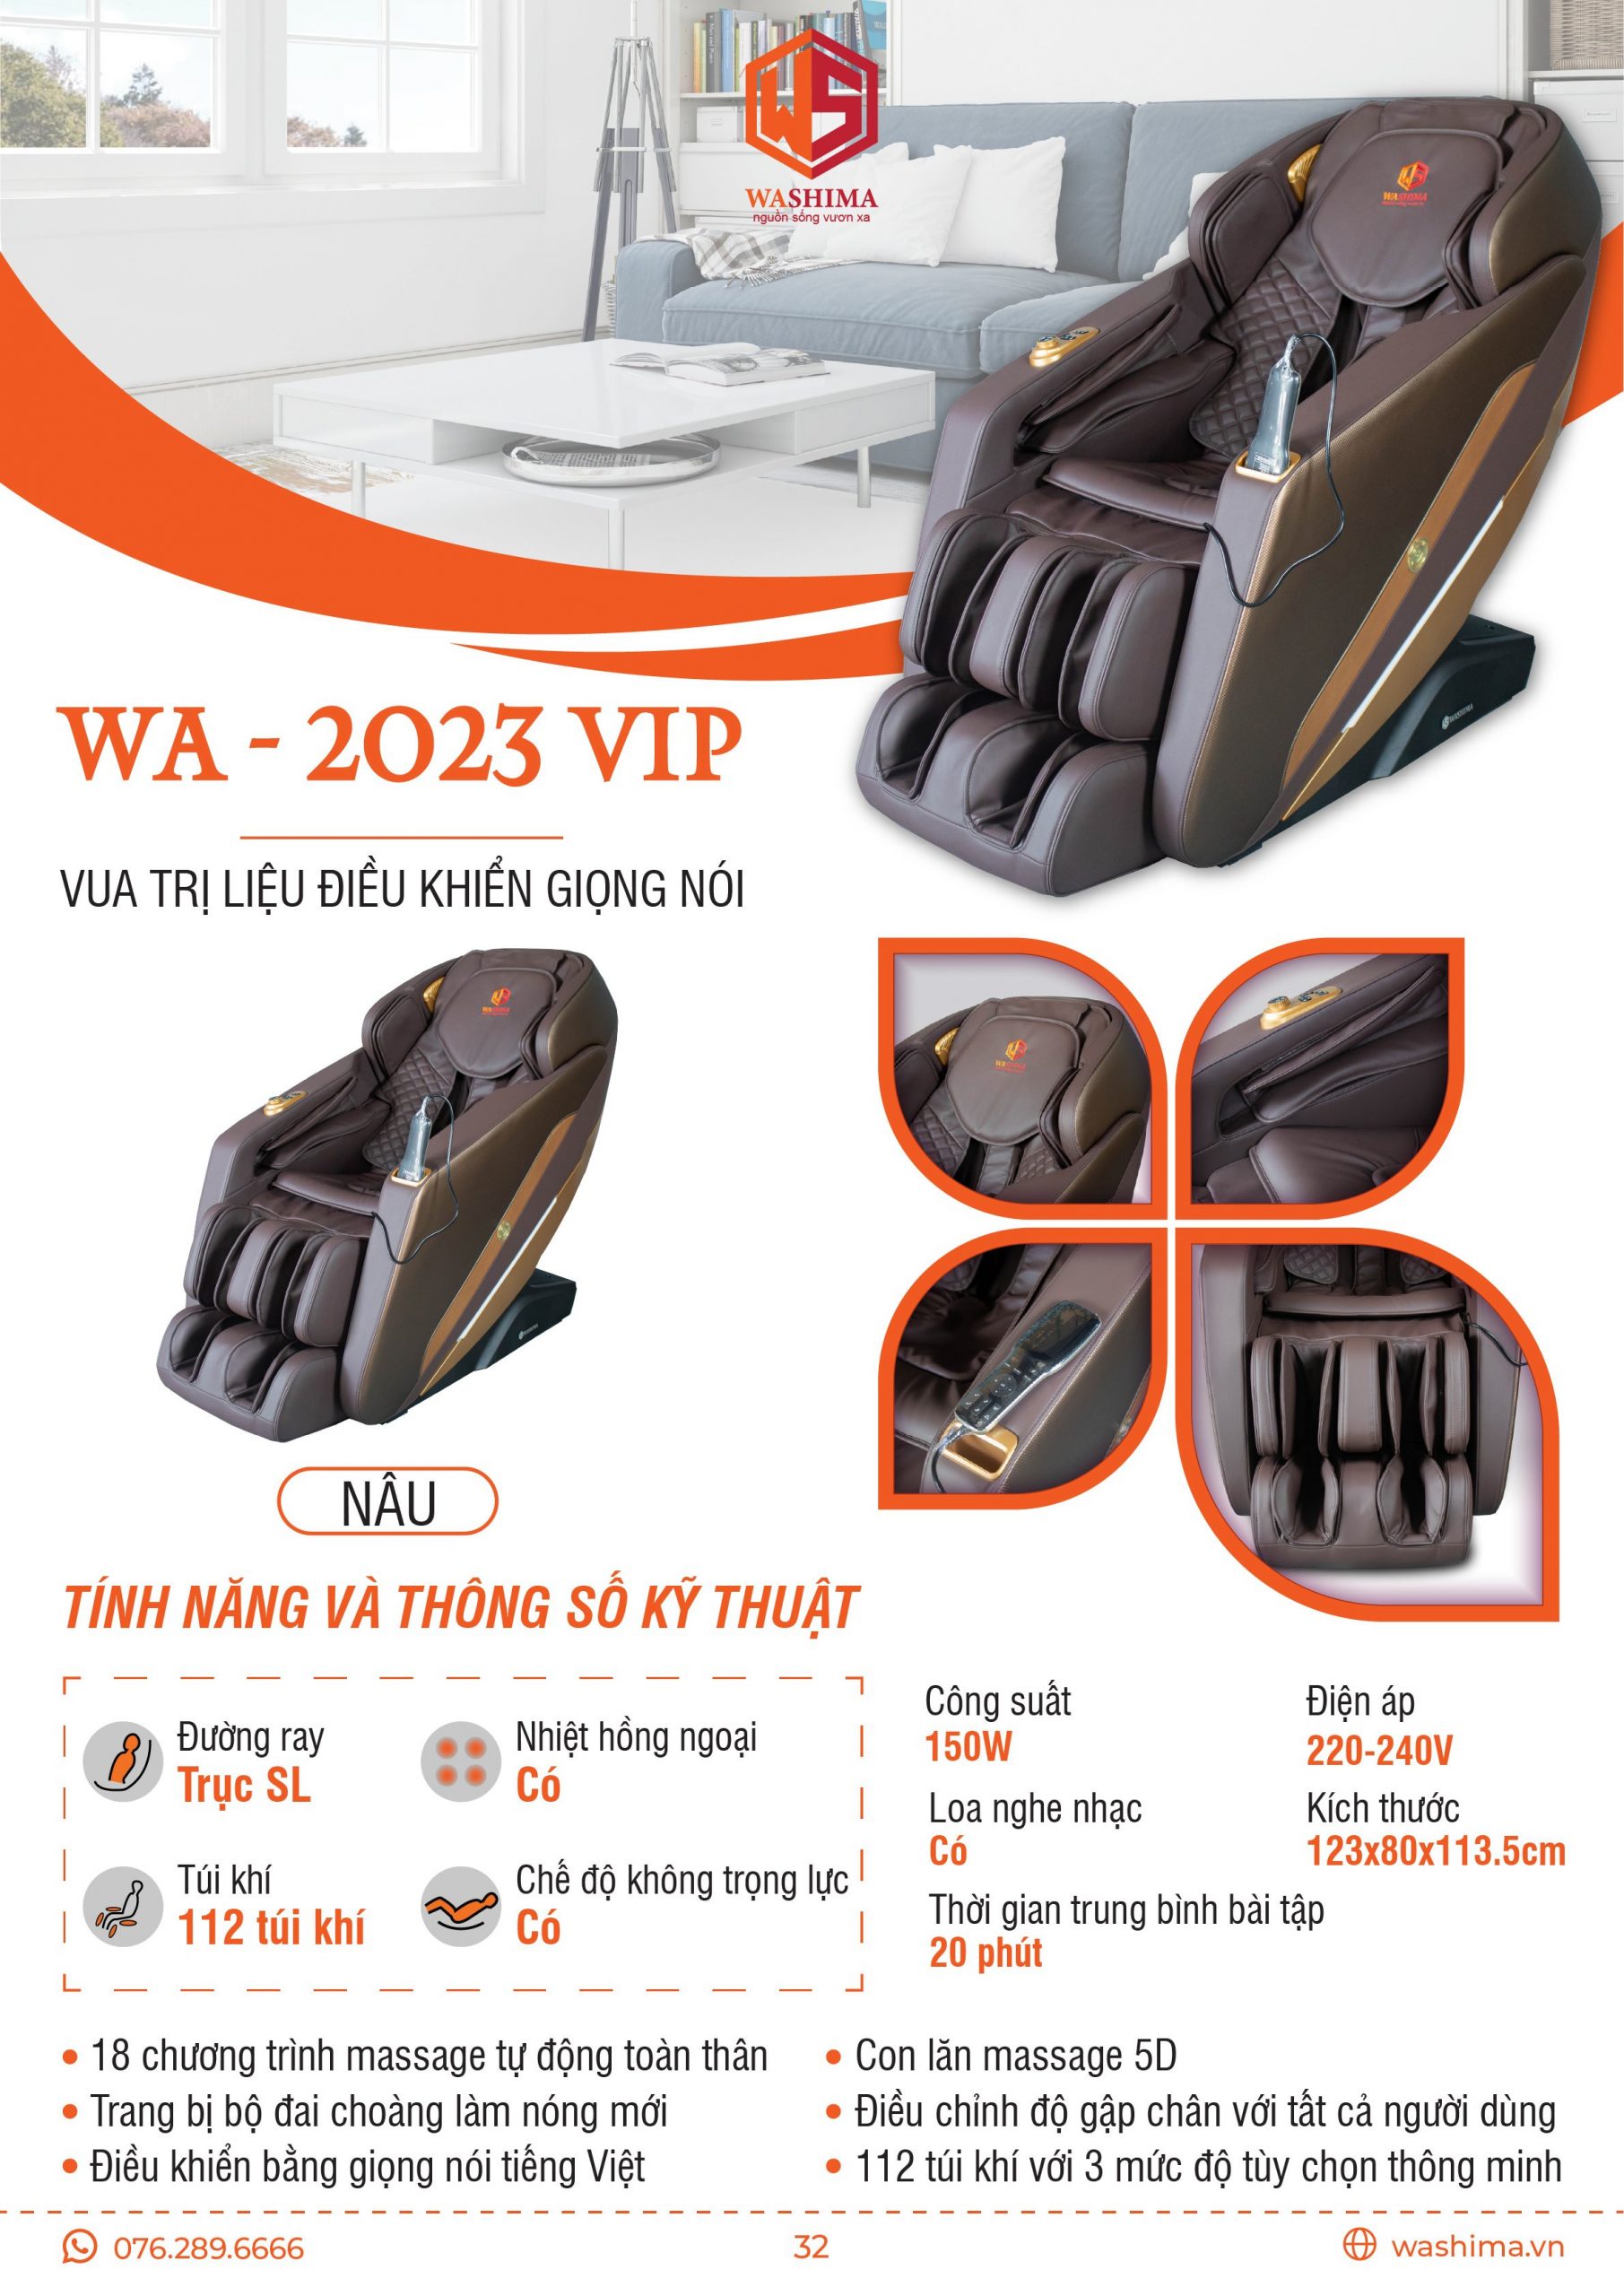 Tính năng và thông số kỹ thuật của sản phẩm ghế massage Washima WA-2023 VIP